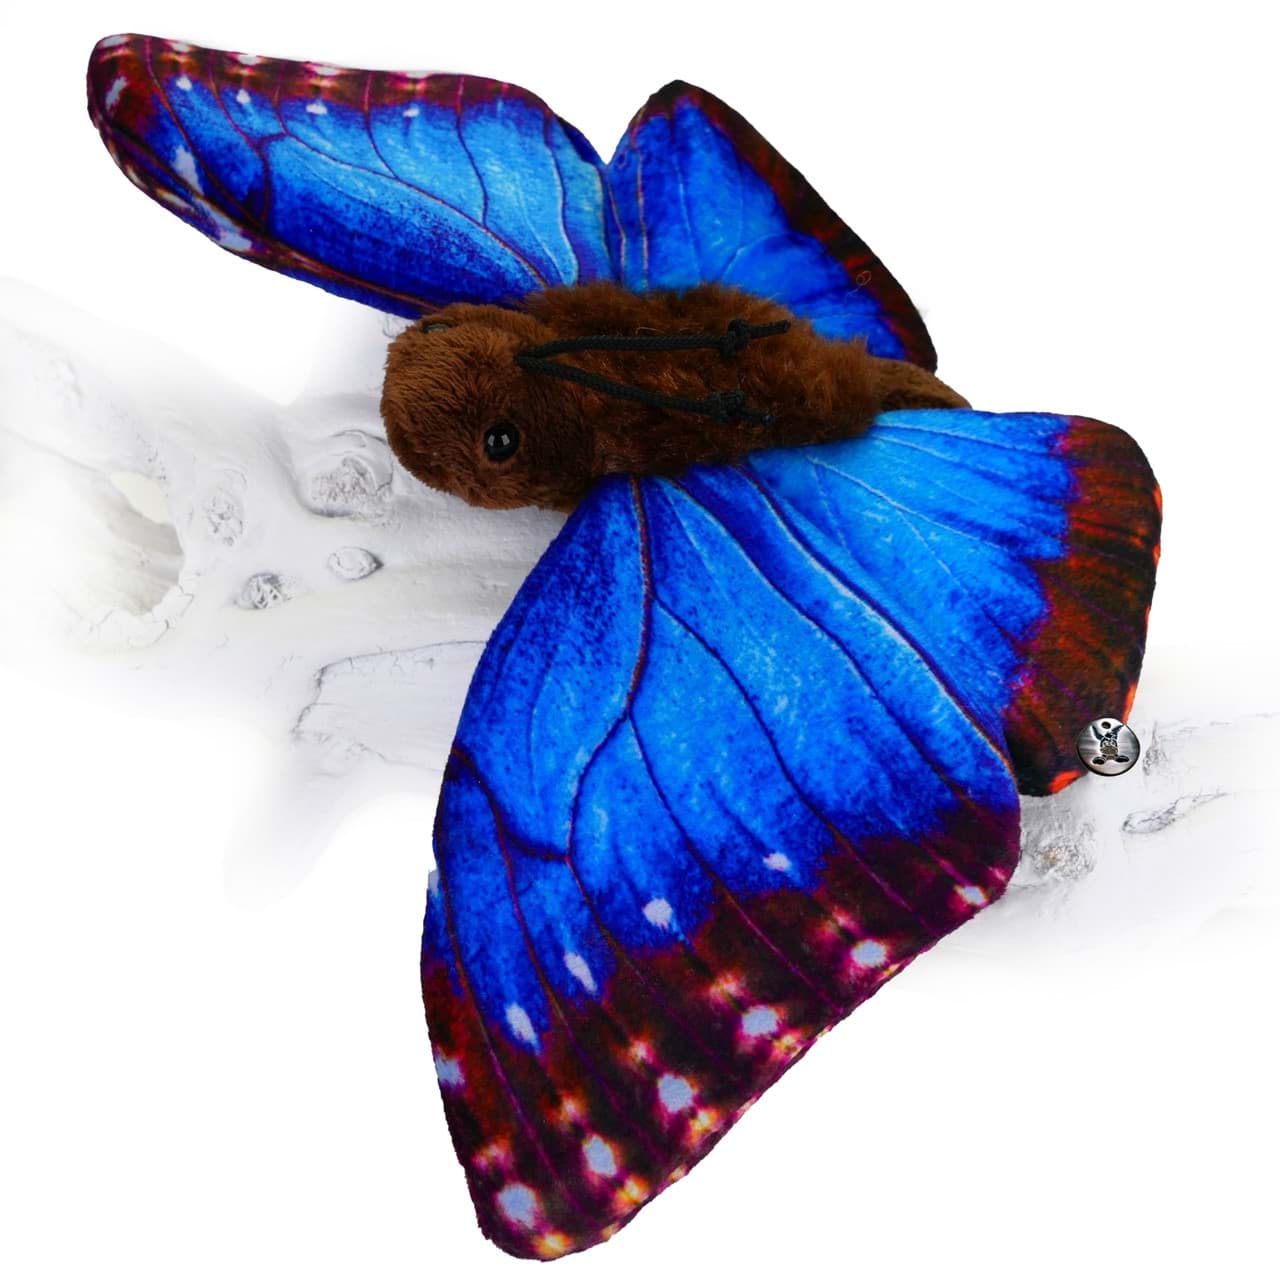 Bild von Schmetterling Kuscheltier Falter Blauer Morphofalter Insekt Plüschtier MORRIS